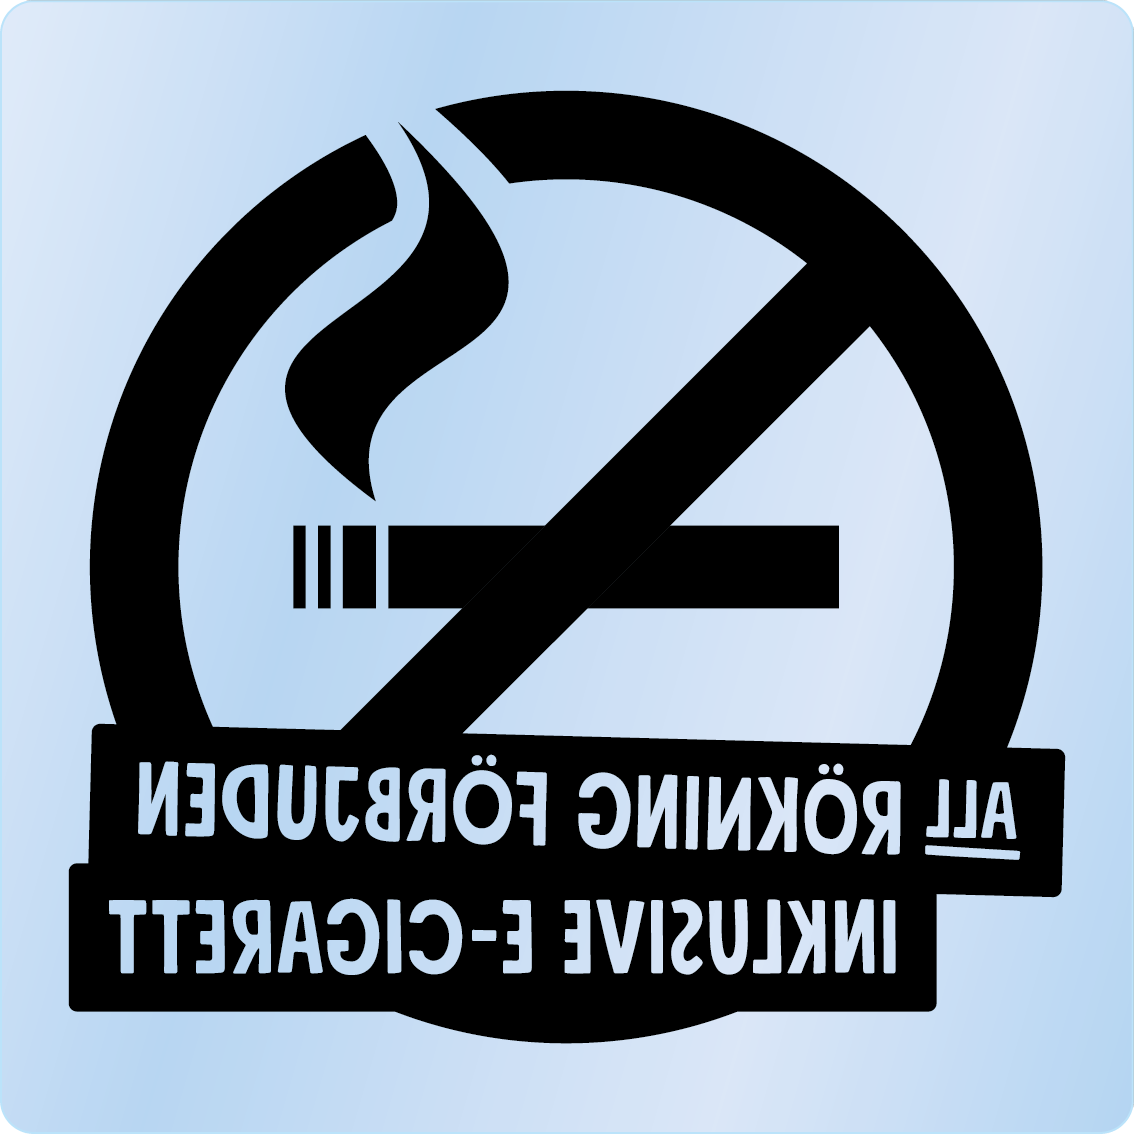 Bild rökförbudsskylt 02B13: Svart / Transparent